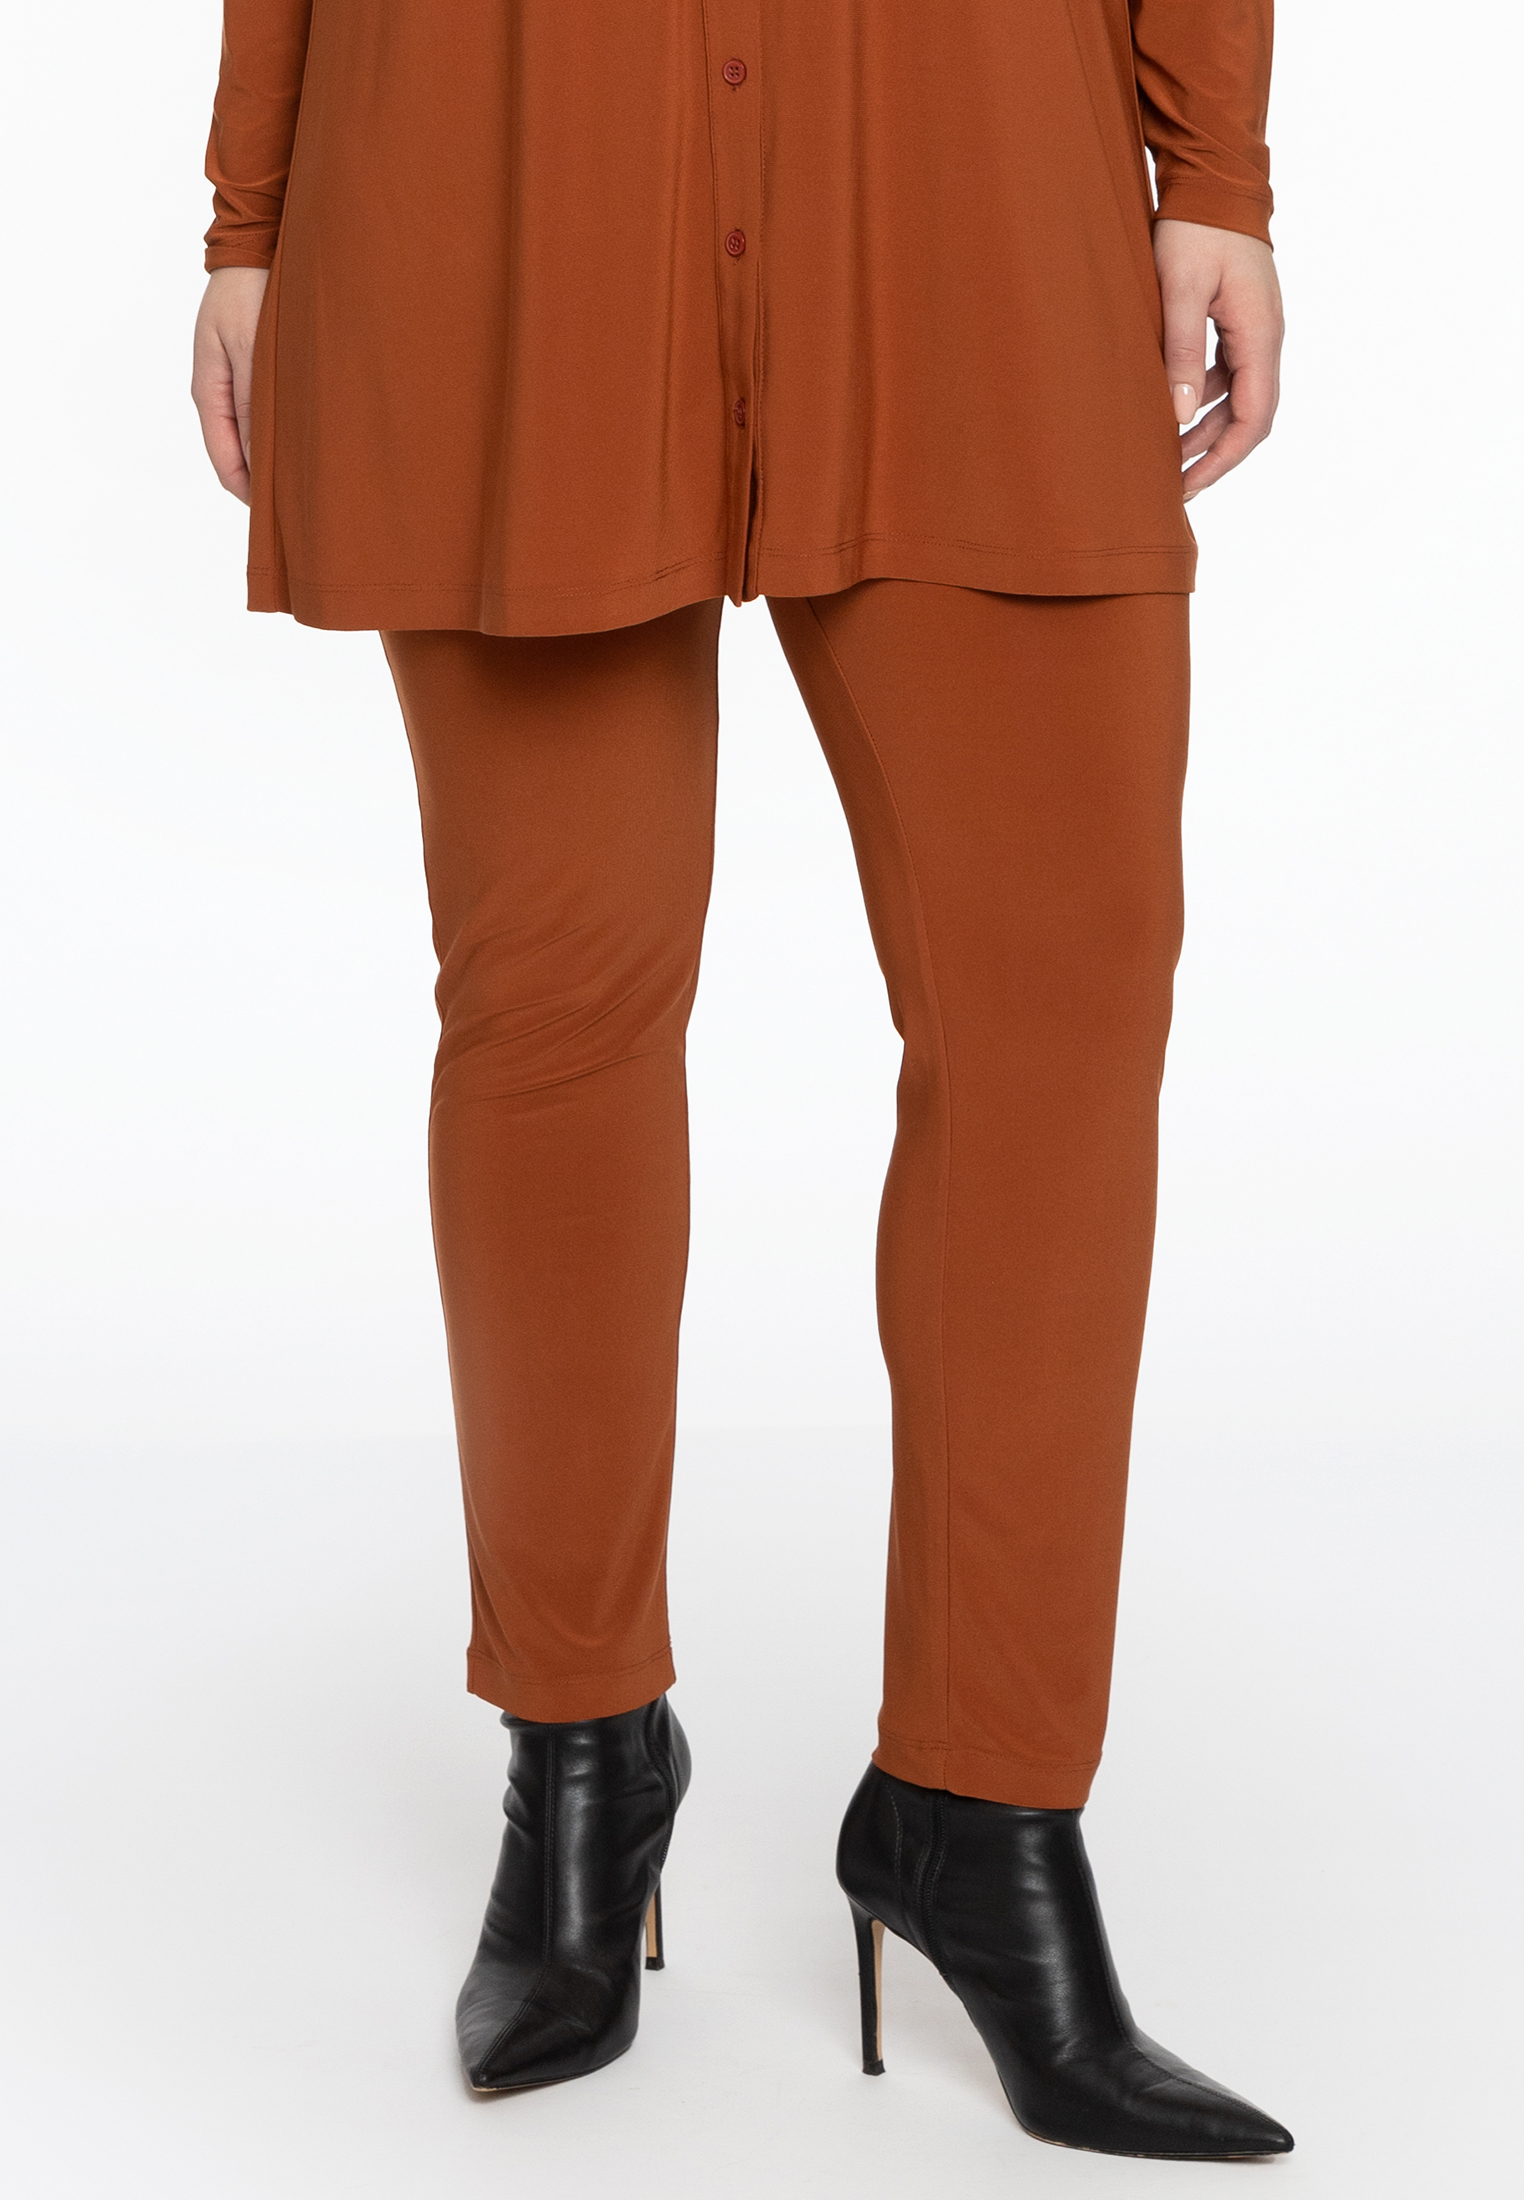 Pantalon DOLCE 46/48 mid brown